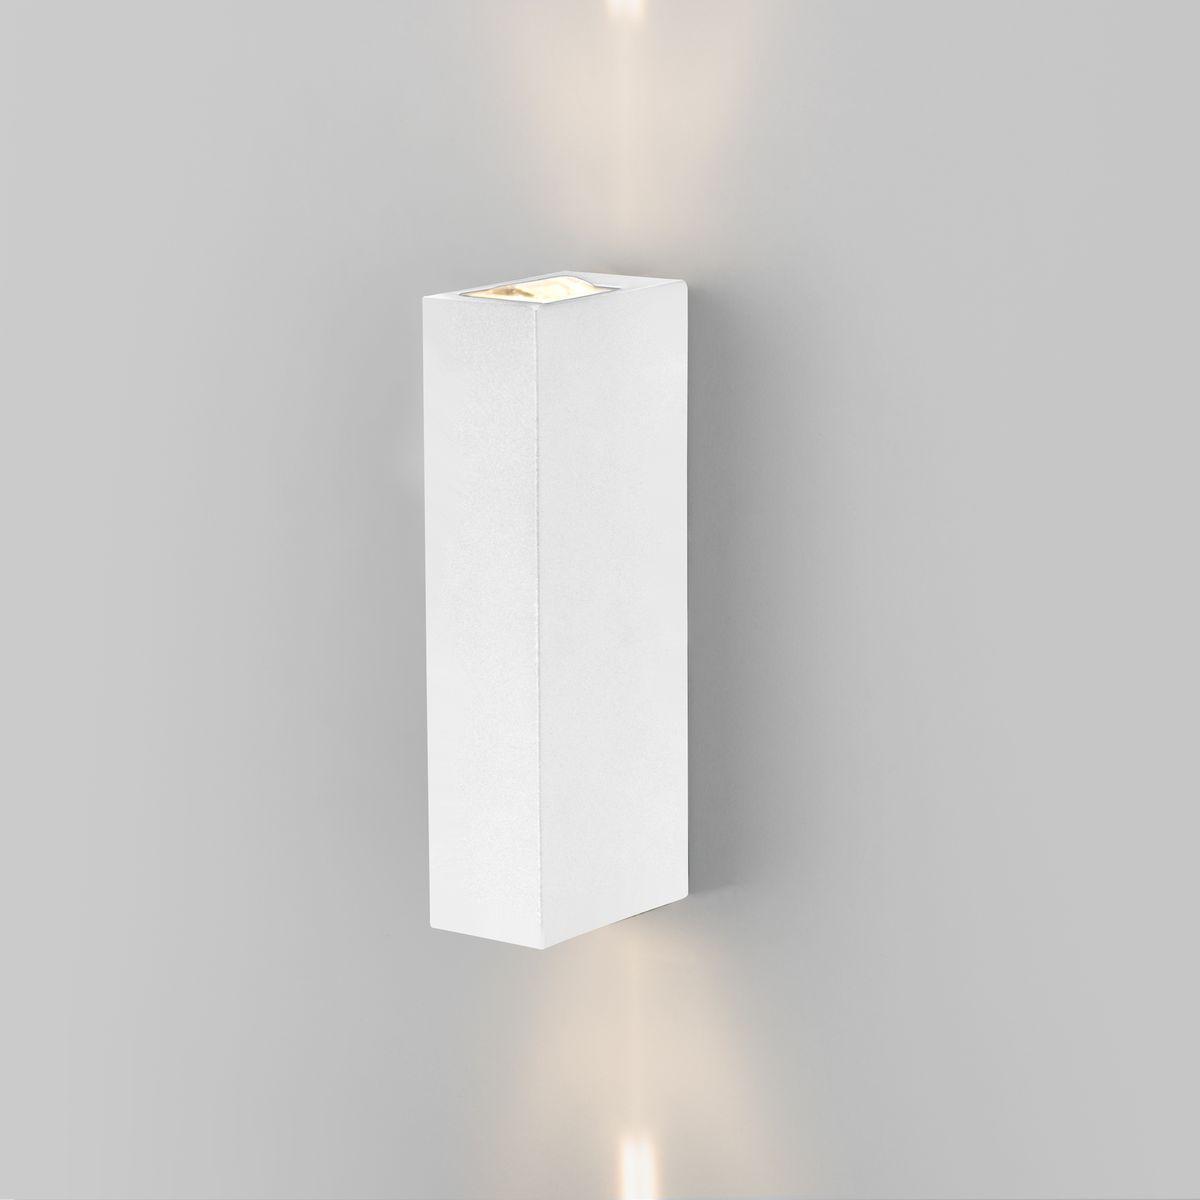 Уличный настенный светодиодный светильник Elektrostandard Blaze 35136/W белый 4690389179174 светодиодный шар 120 см белый rl b120 500 w